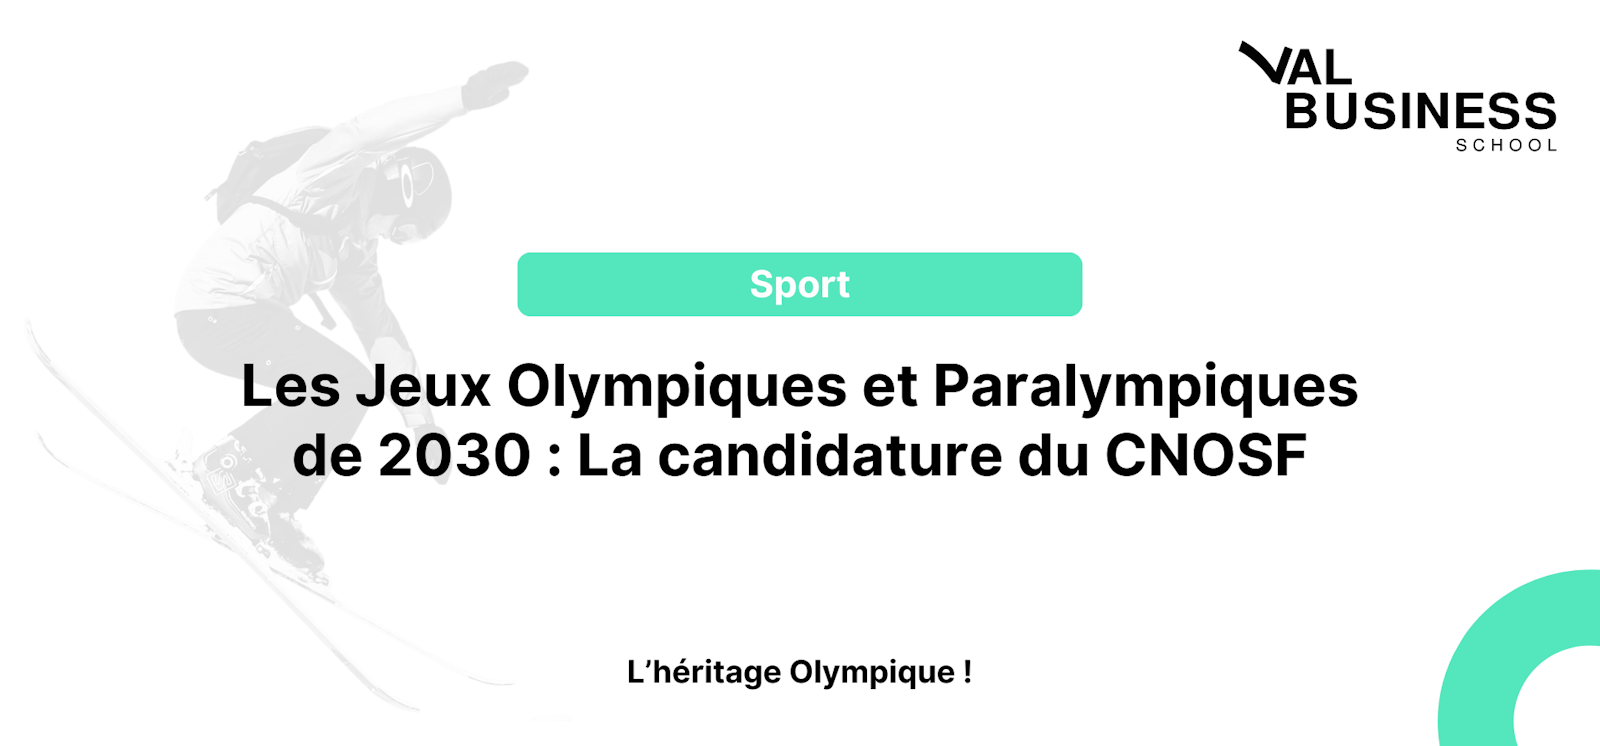 Les Jeux Olympiques et Paralympiques de 2030 aux Alpes Françaises : La candidature du CNOSF